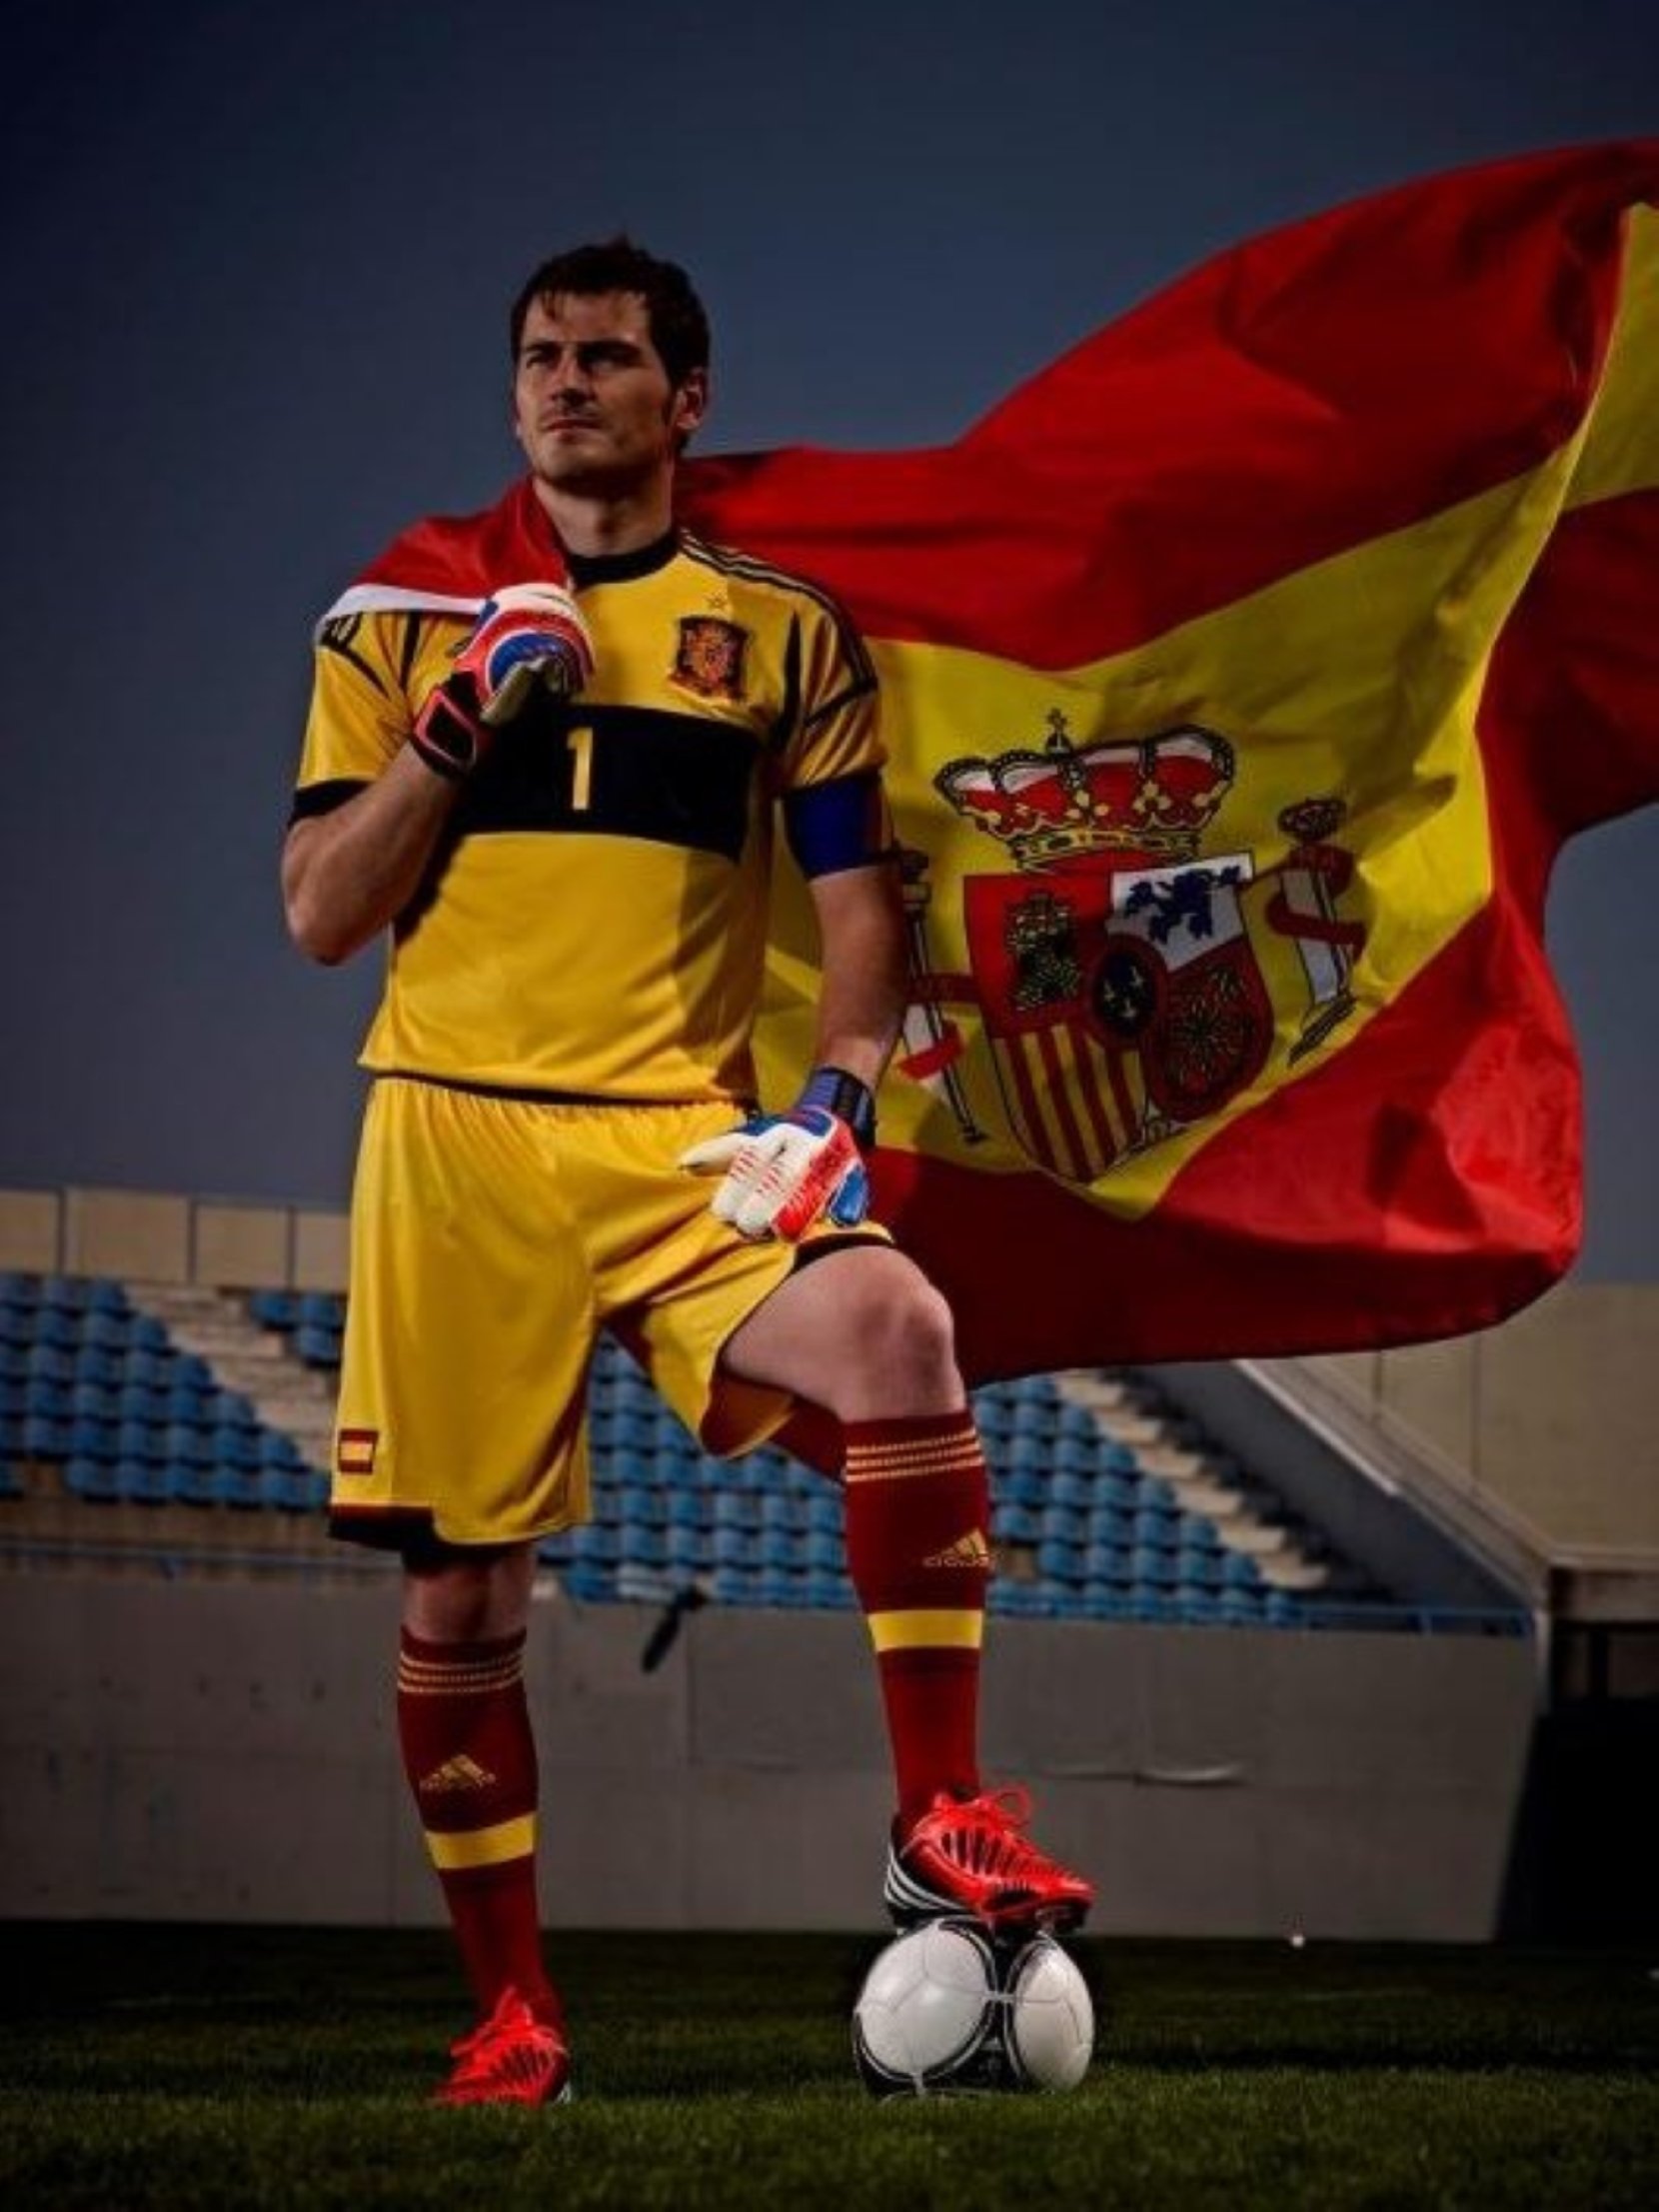 Casillas demana seny... i se'l mengen per escriure 'Catalunya': "con eñe melón"